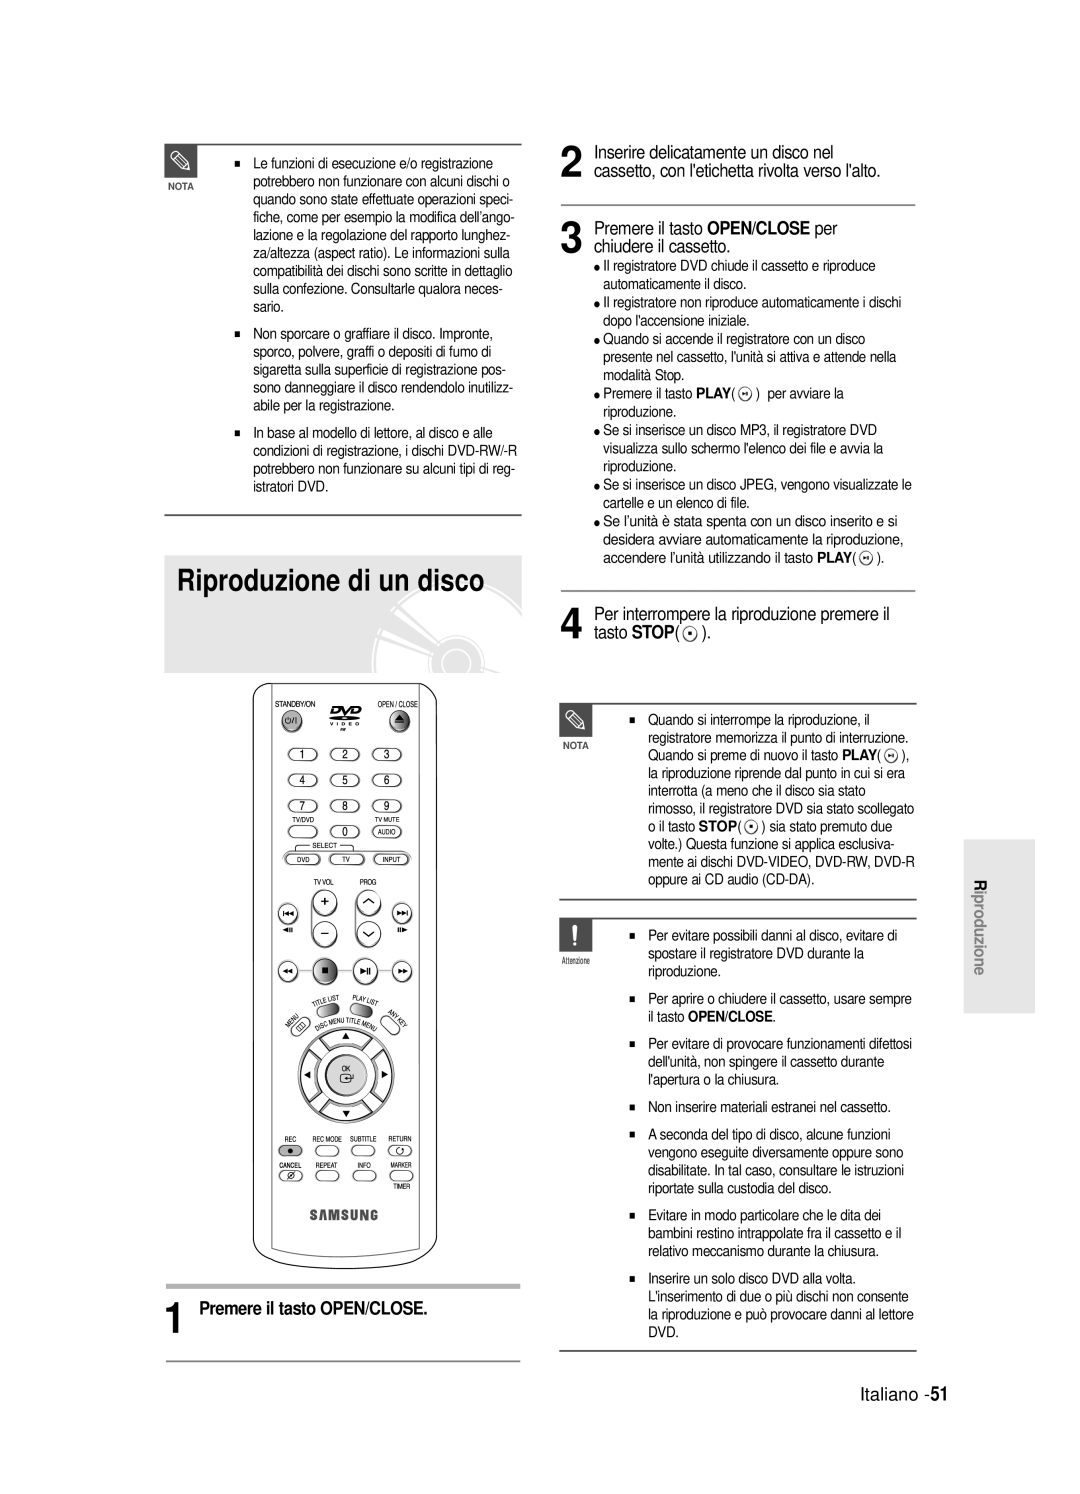 Samsung DVD-R120E/XET manual Riproduzione di un disco, Per interrompere la riproduzione premere il tasto STOP, Italiano 